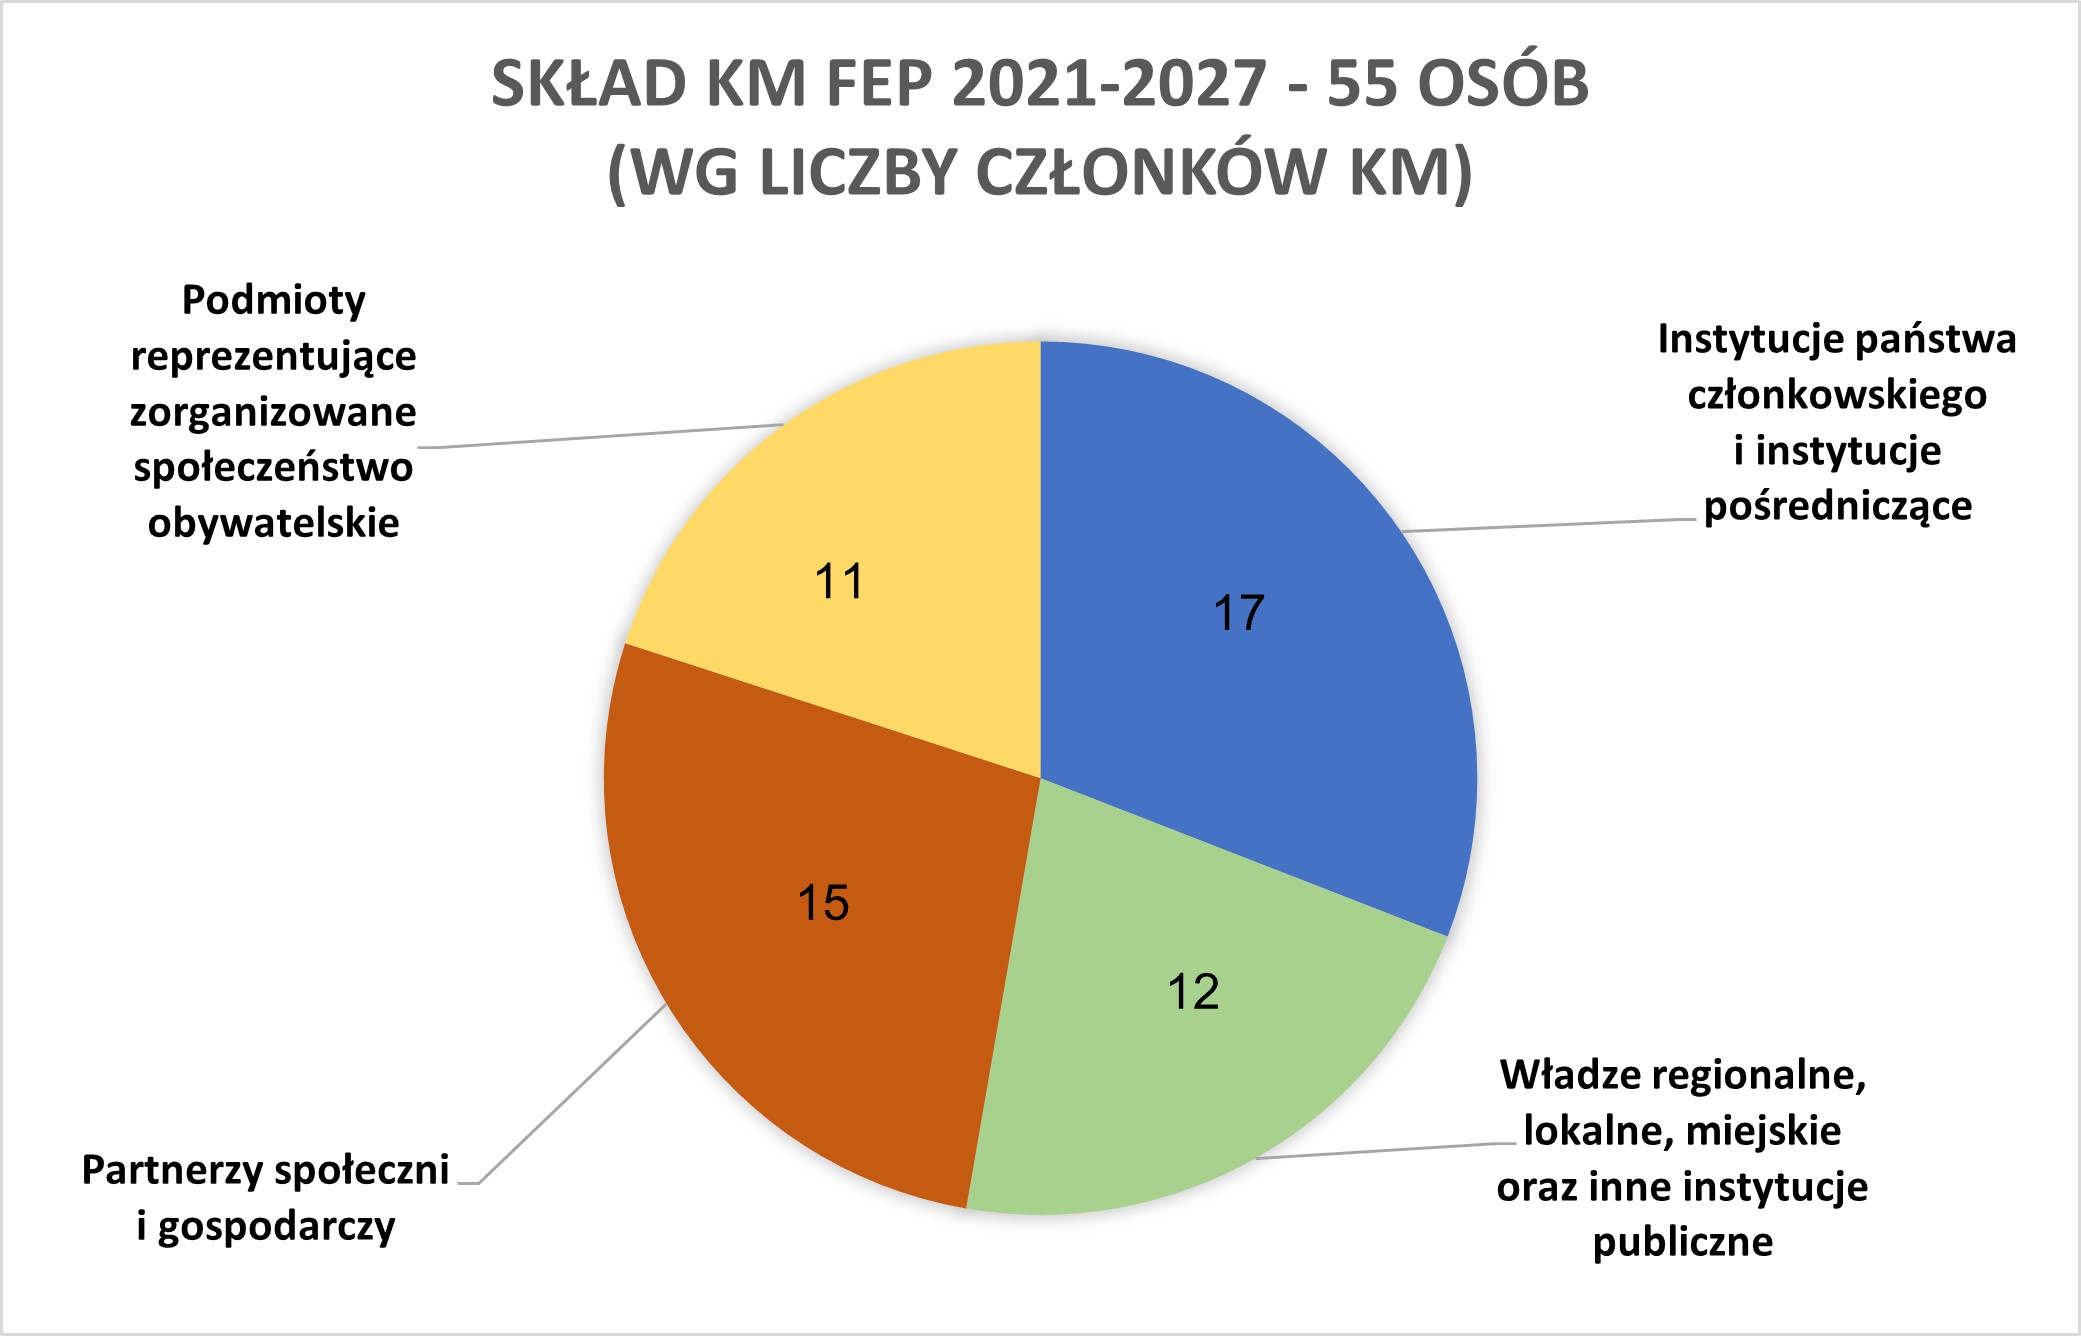 Grafika przedstawiająca skład KM FEP 2021-2027 w podziale na instytucje państwa członkowskiego i instytucje pośredniczące oraz poszczególne kategorie partnerów